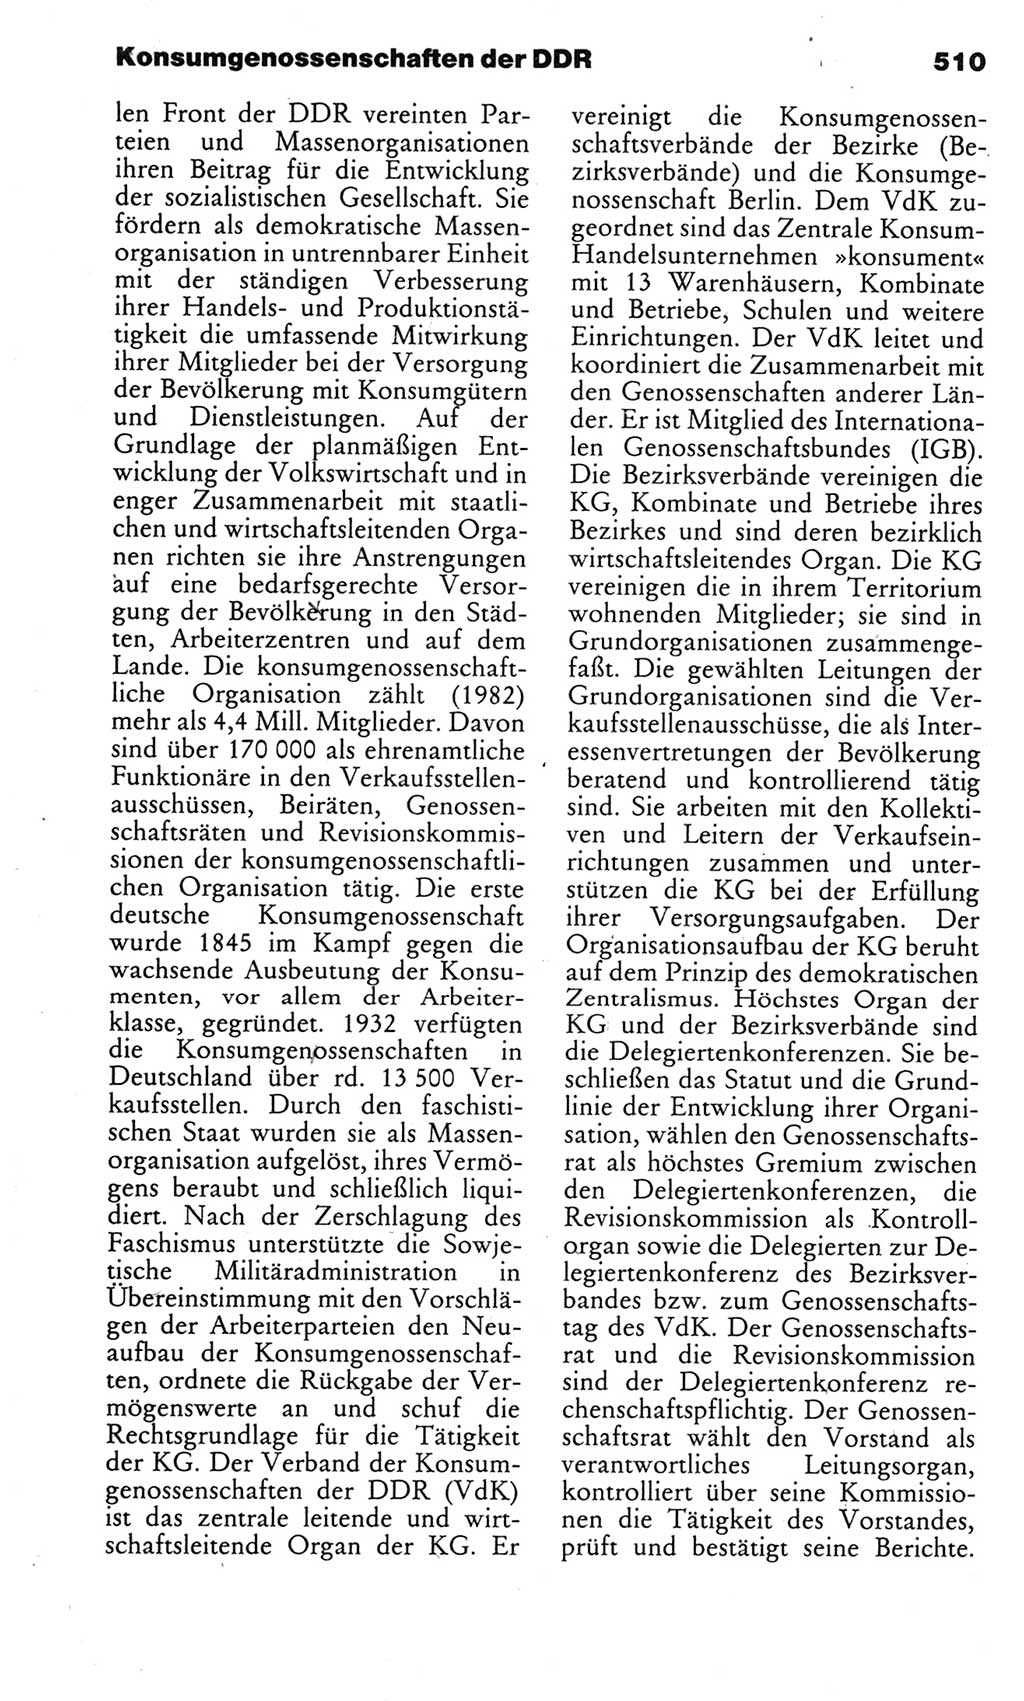 Kleines politisches Wörterbuch [Deutsche Demokratische Republik (DDR)] 1983, Seite 510 (Kl. pol. Wb. DDR 1983, S. 510)